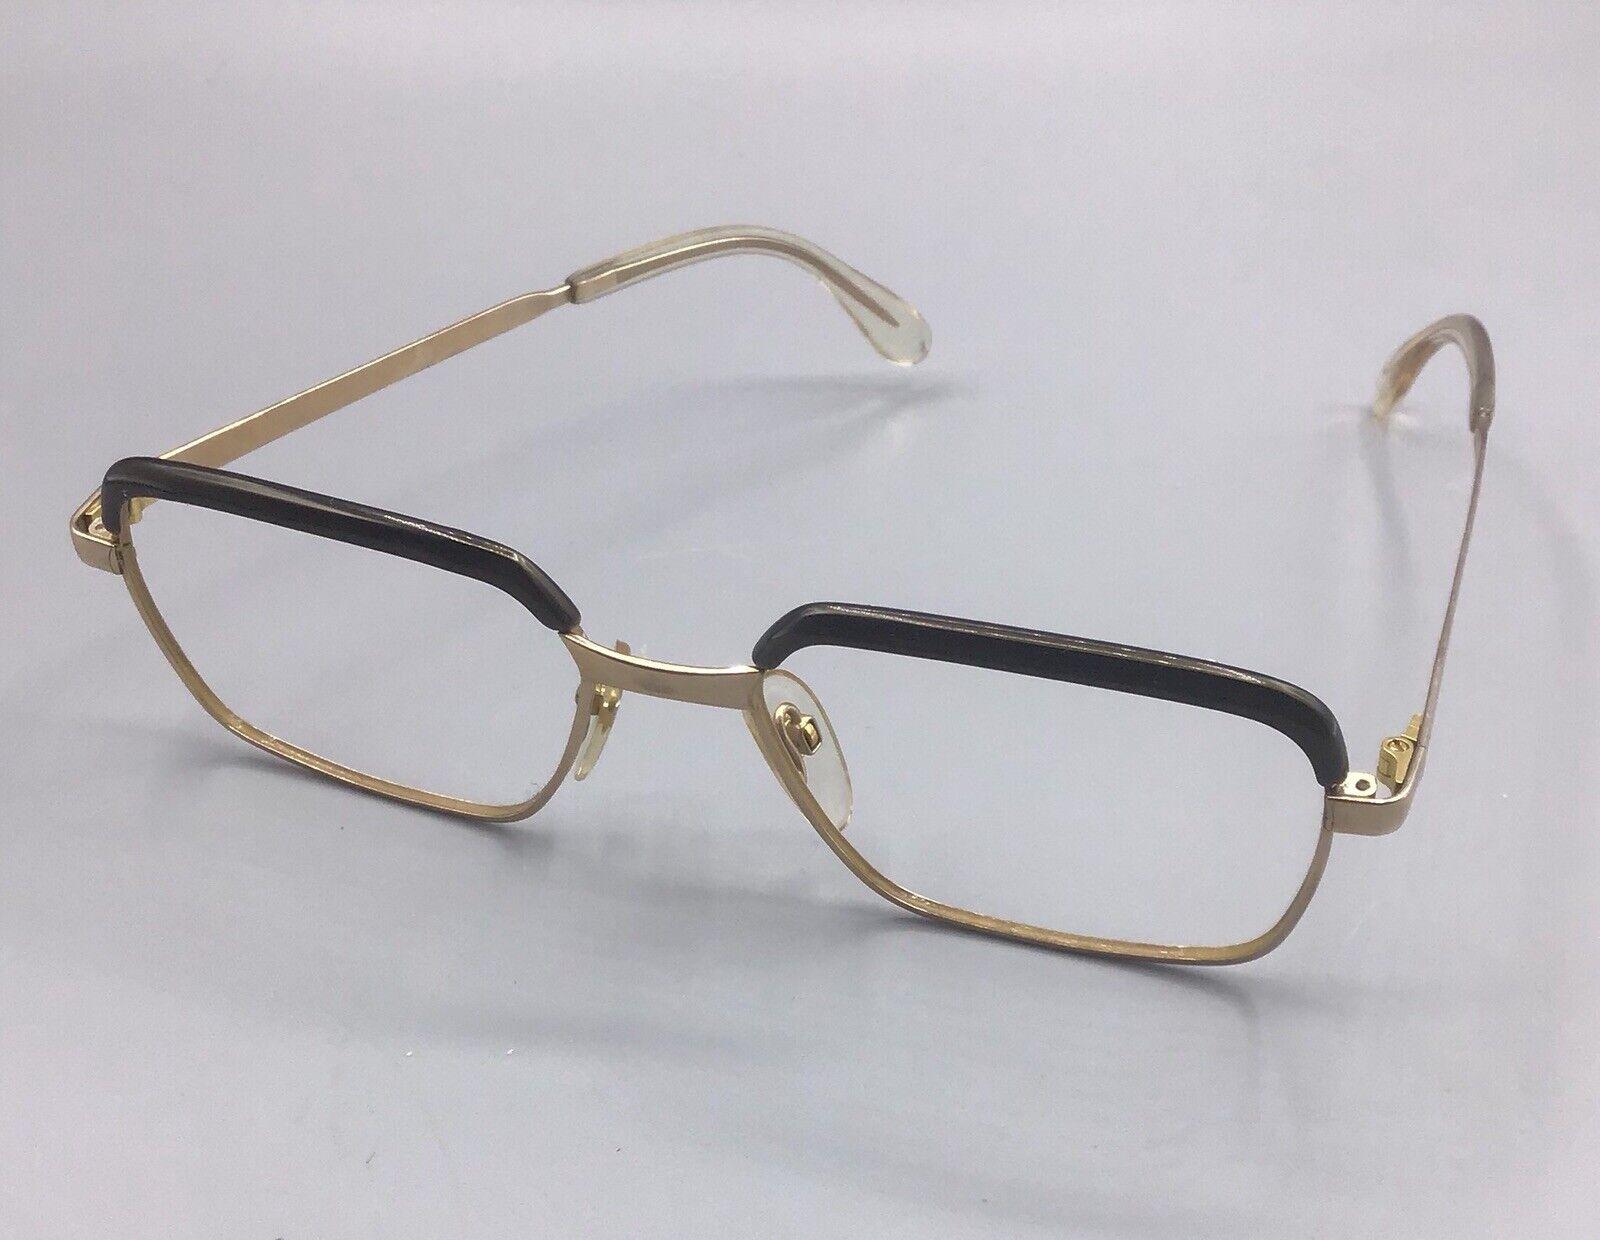 Rodenstock 1/20 12k correl occhiale vintage brillen eyewear lunettes